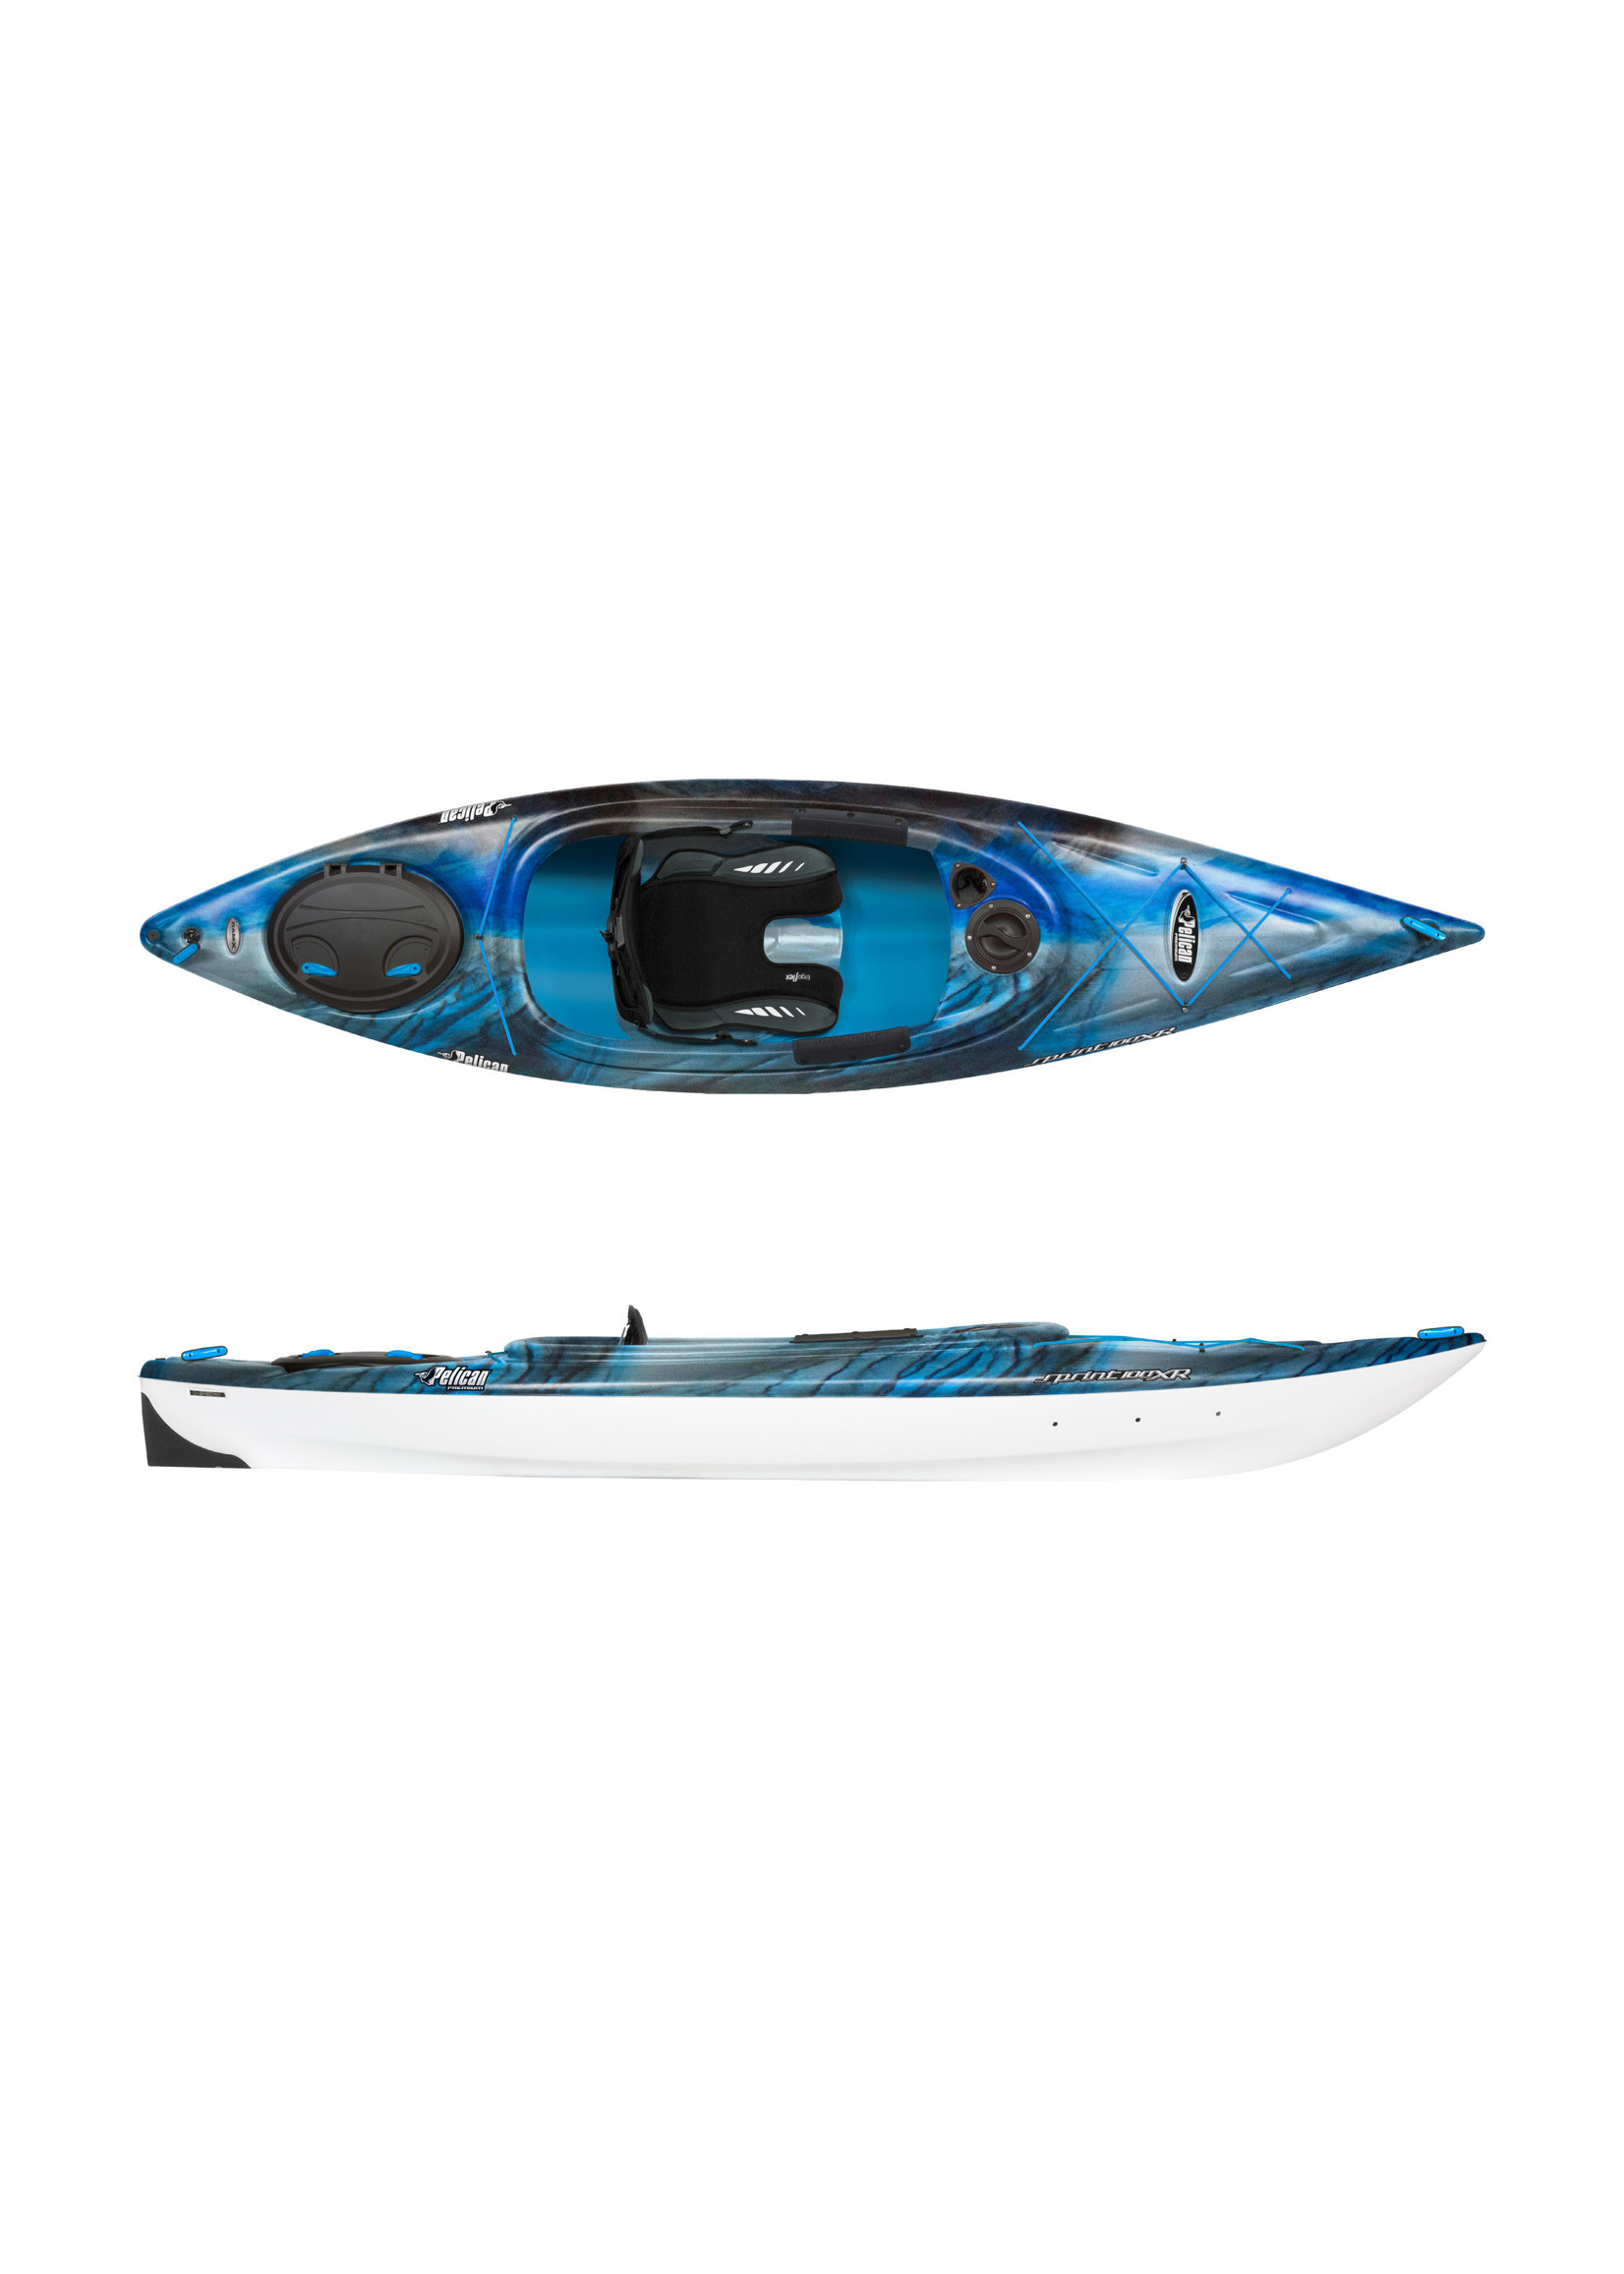 Pelican Sport Kayak récréatif Sprint 100 XR Neptune/White/Cyan